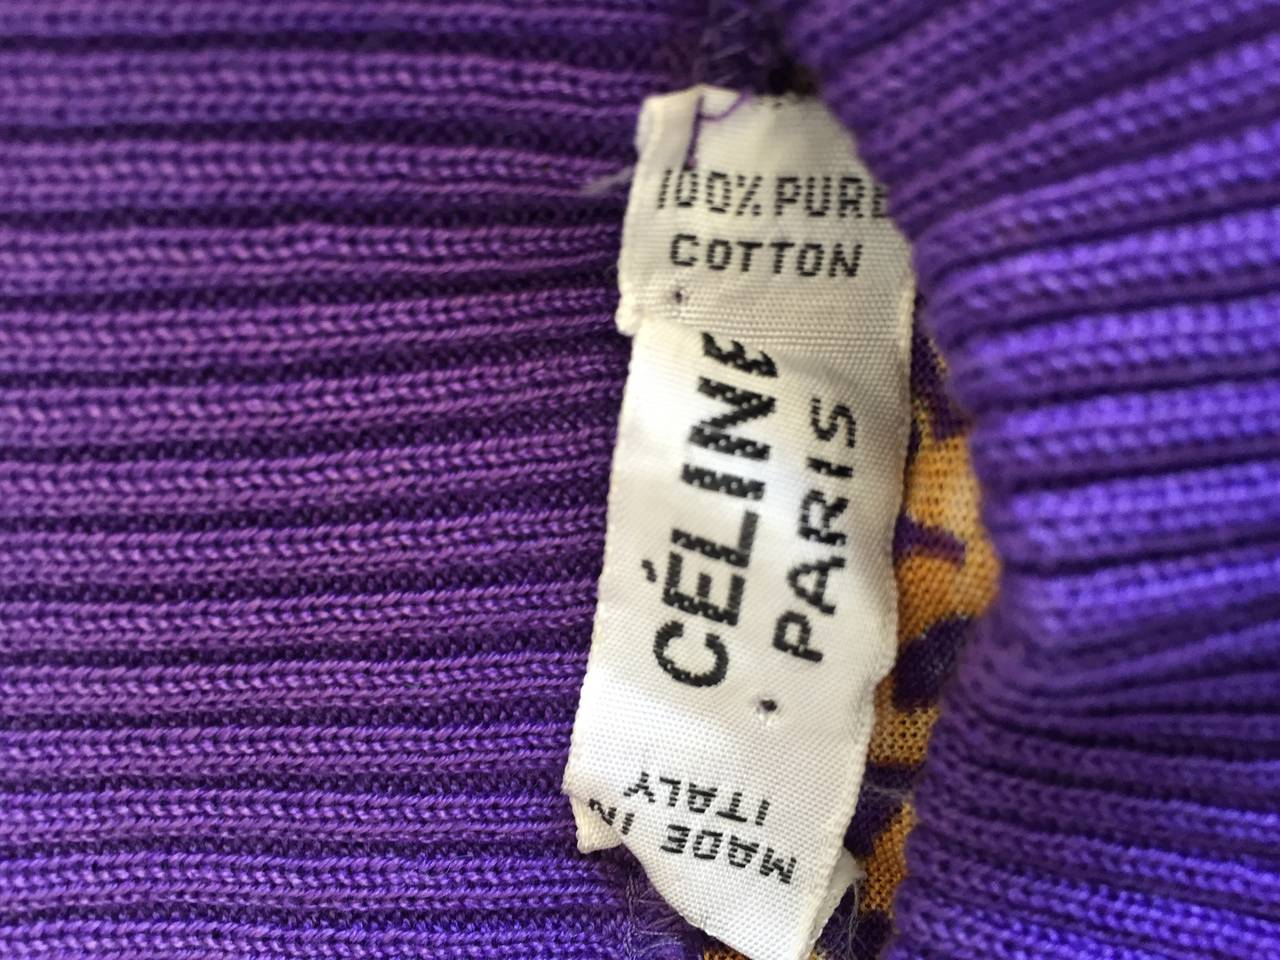 Celine Purple + Gold Long Sleeve Vintage Cotton Top Blouse w/ Chain Print 1